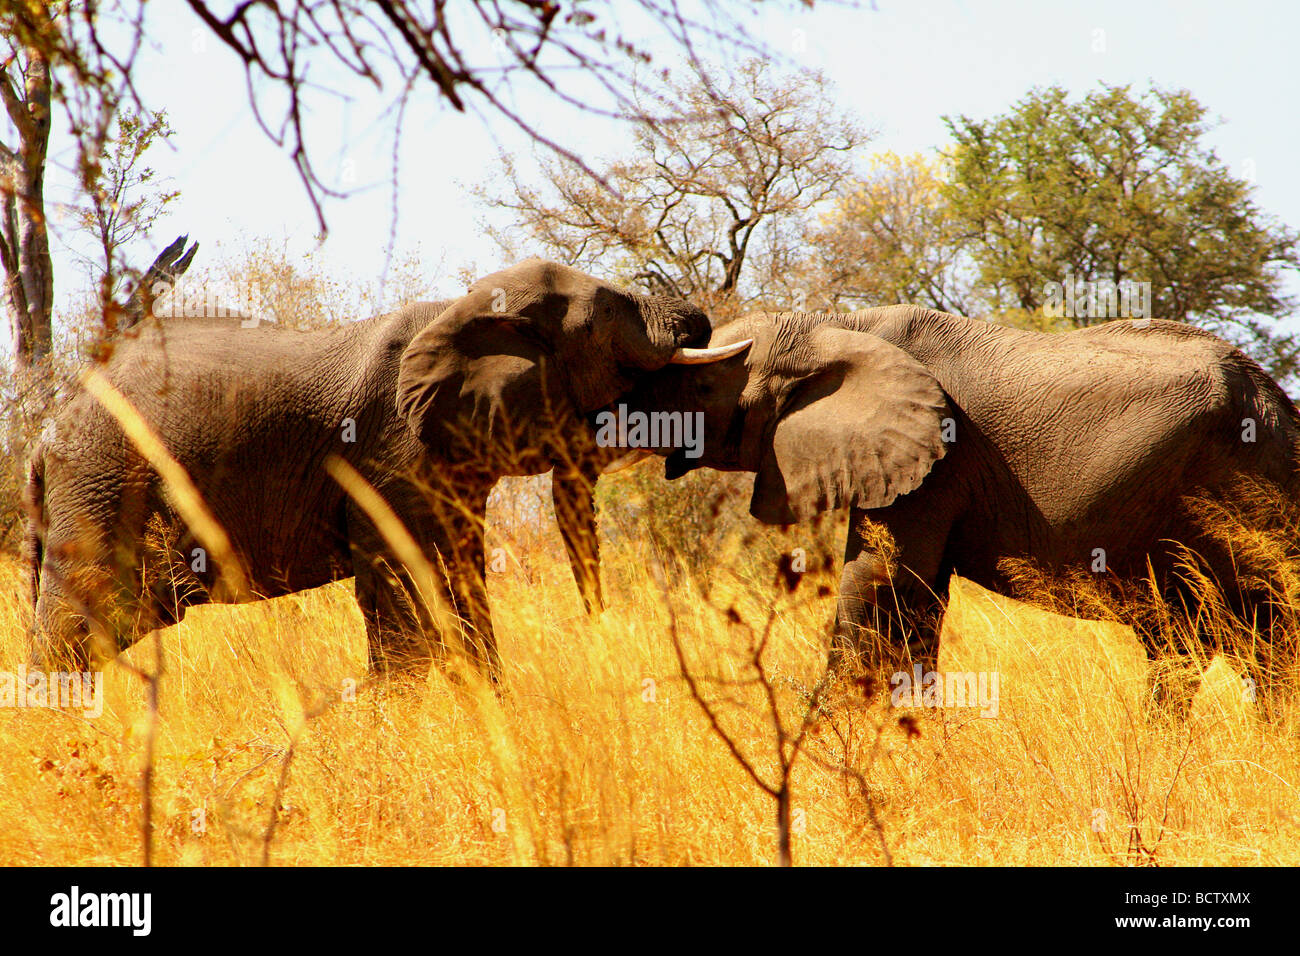 Les éléphants d'Afrique (Loxodonta africana) jouant dans une forêt, parc national de Chobe, au Botswana Banque D'Images